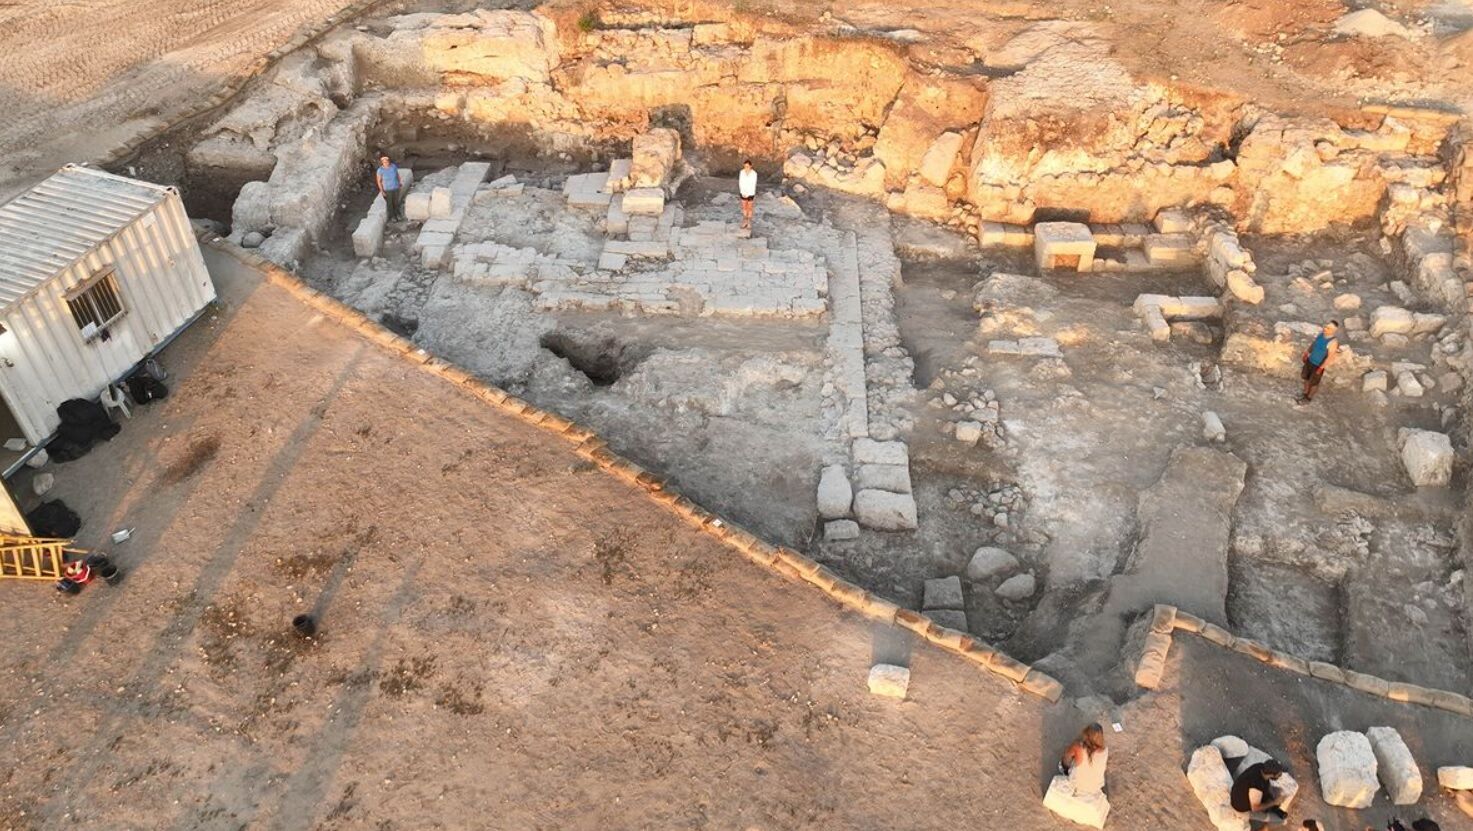 Поблизу Армагеддону в Ізраїлі розкопали криваво-червоні стіни 1800-річного римського амфітеатру (фото)